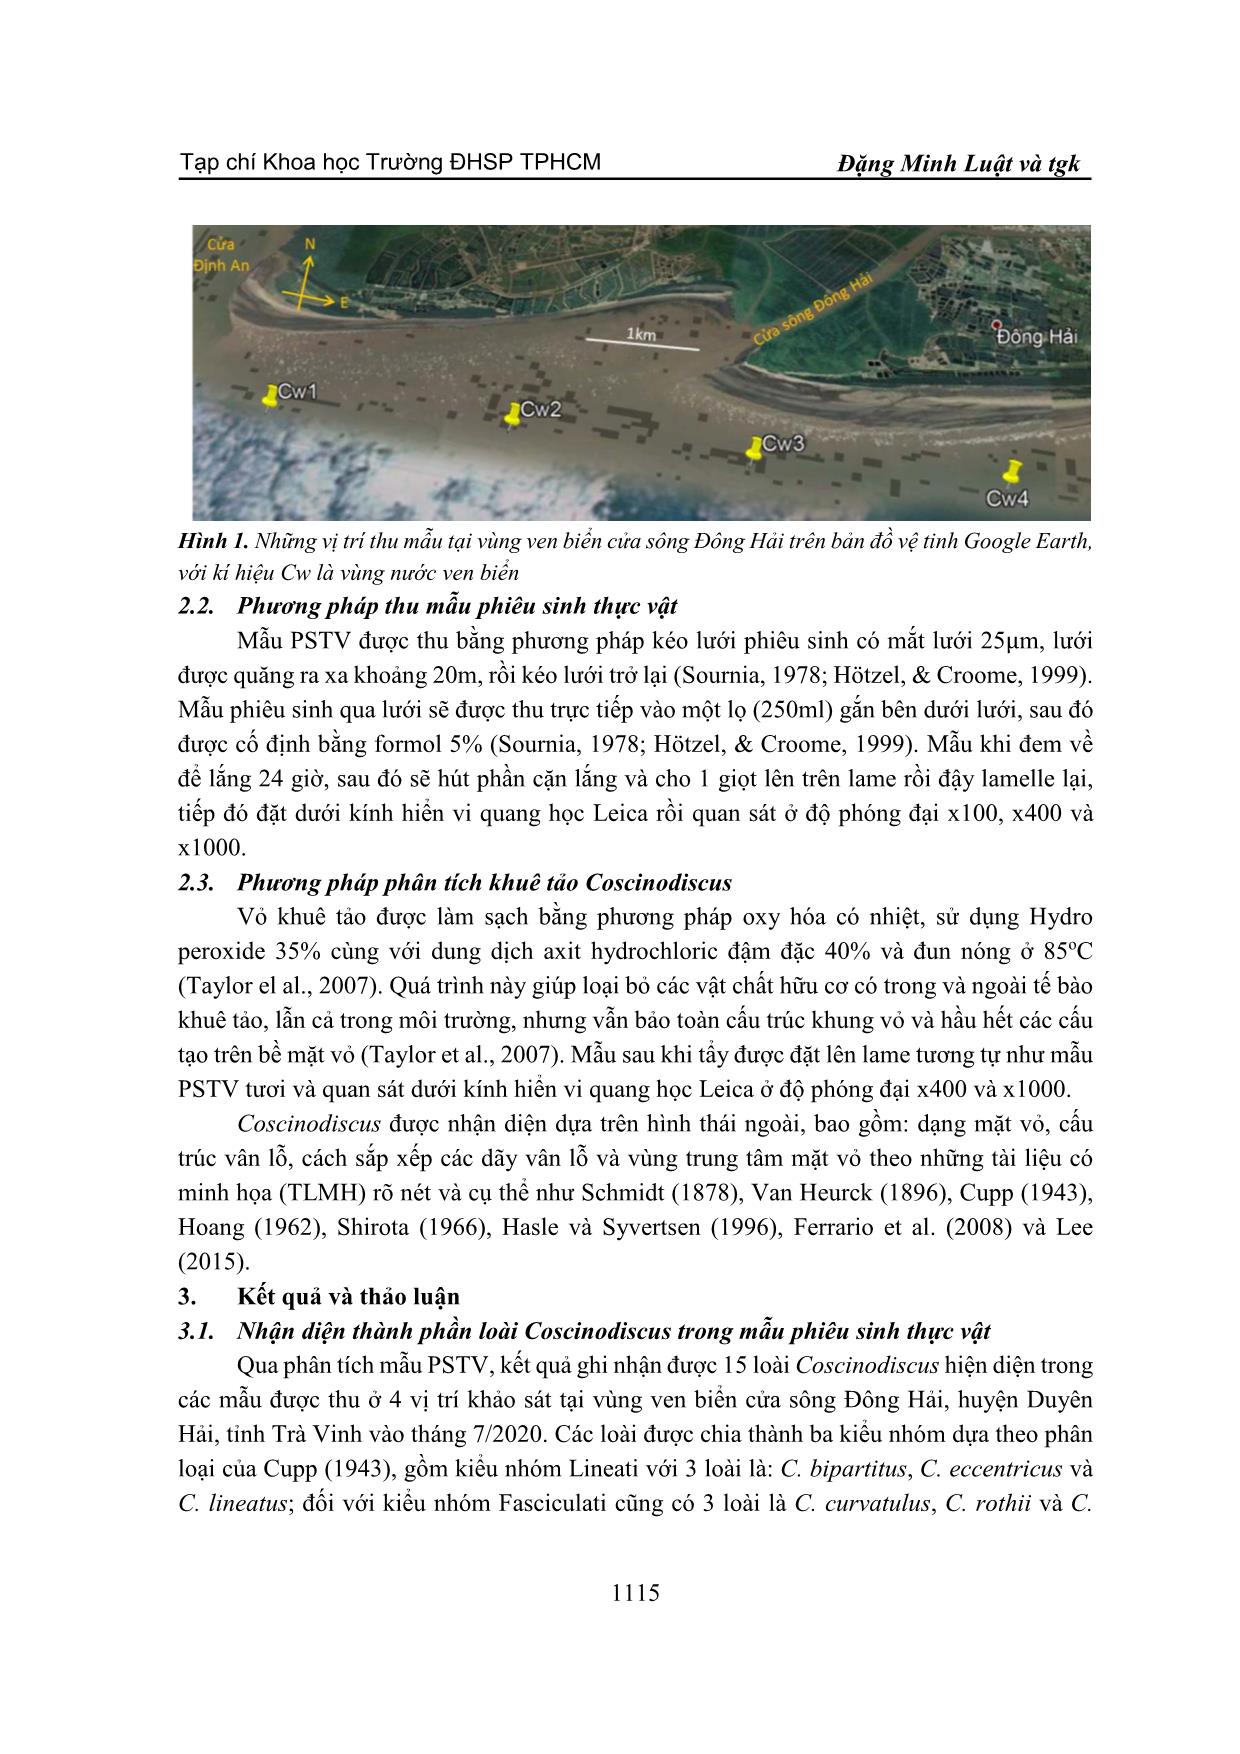 Nhận diện khuê tảo trung tâm coscinodiscus tại ven biển cửa sông Đông Hải, huyện Duyên Hải, tỉnh Trà Vinh trang 3